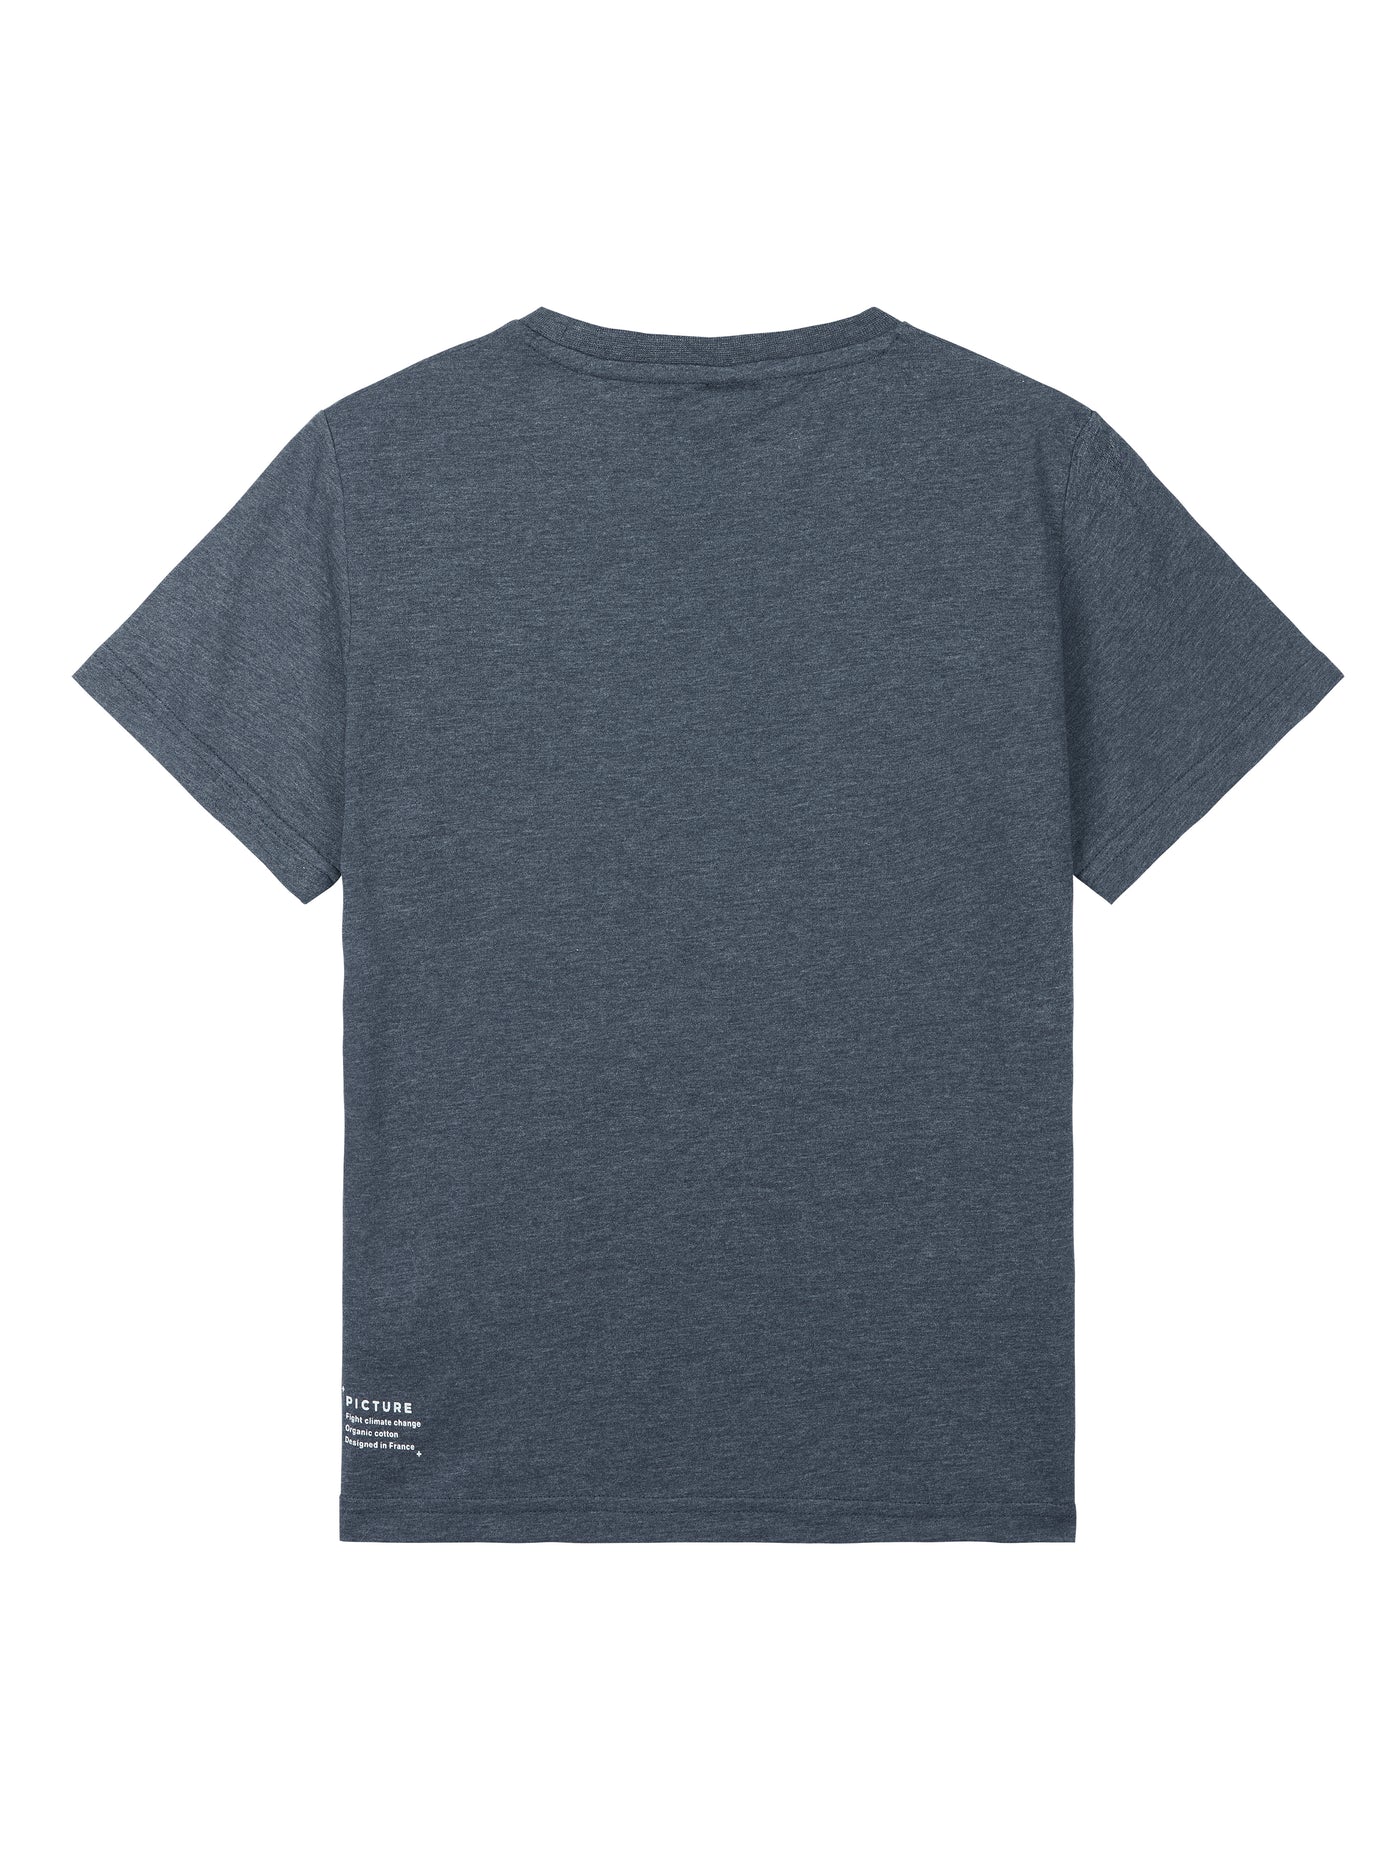 Basement Tee Boy - T-Shirt für Kinder und Jugendliche